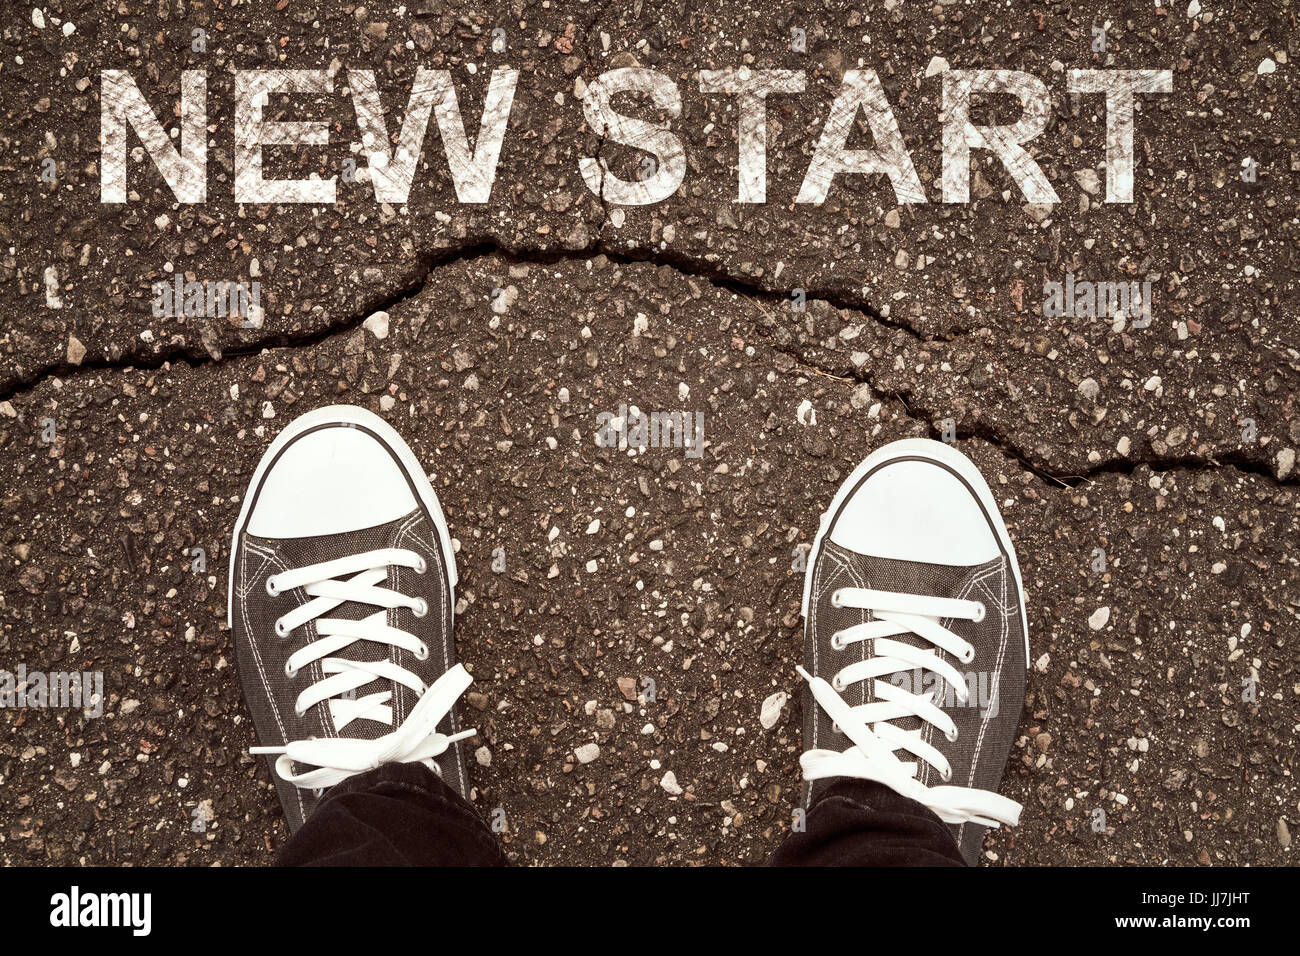 Start new life